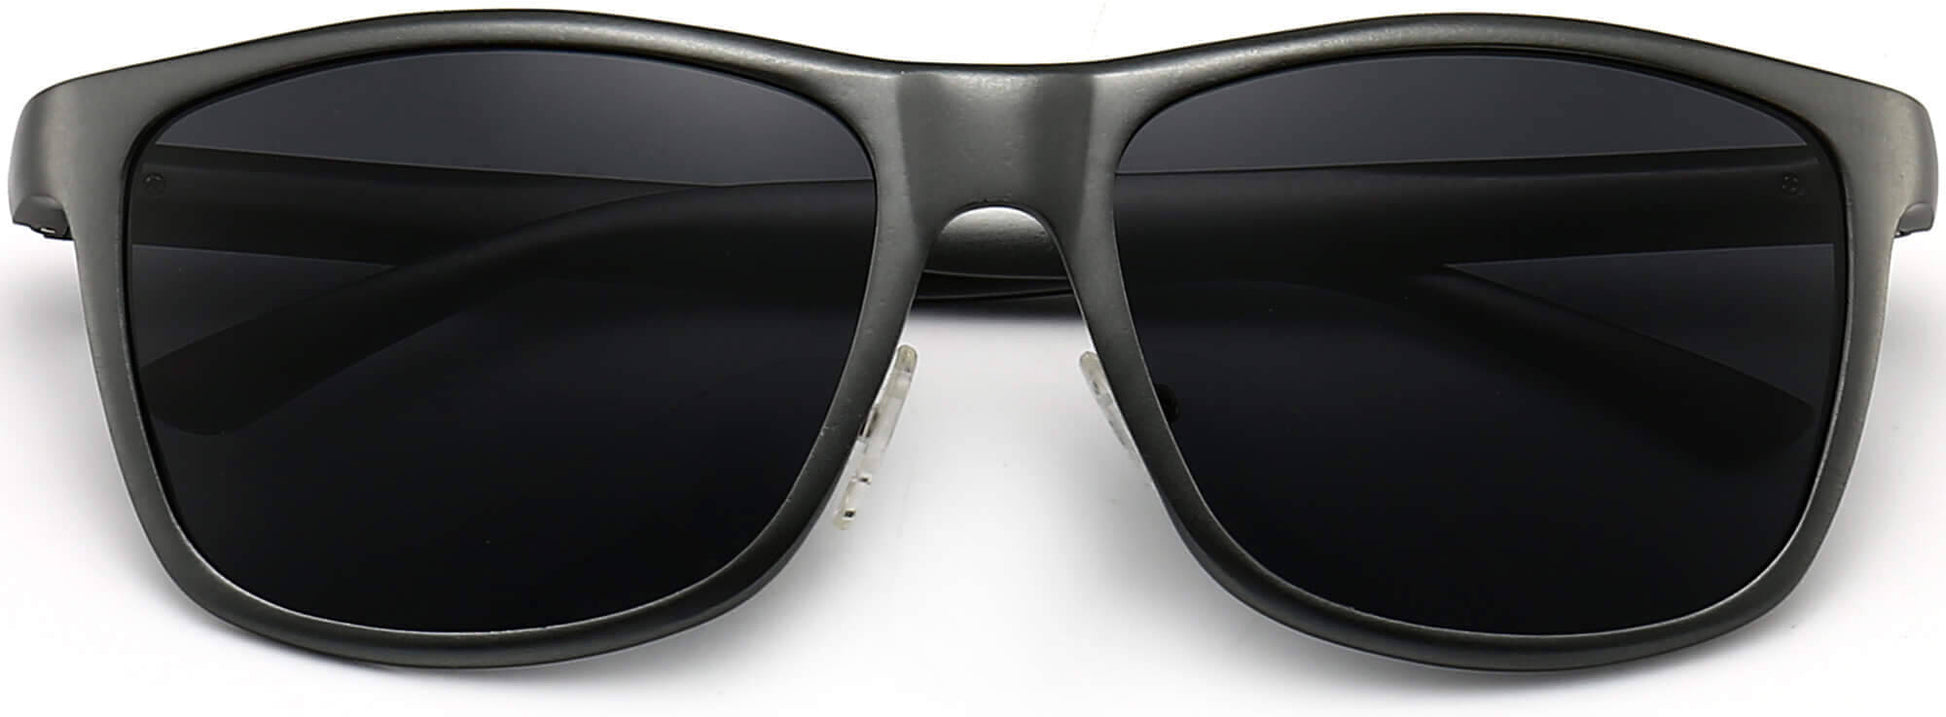 Carson Gray Plastic Sunglasses from ANRRI, closed view